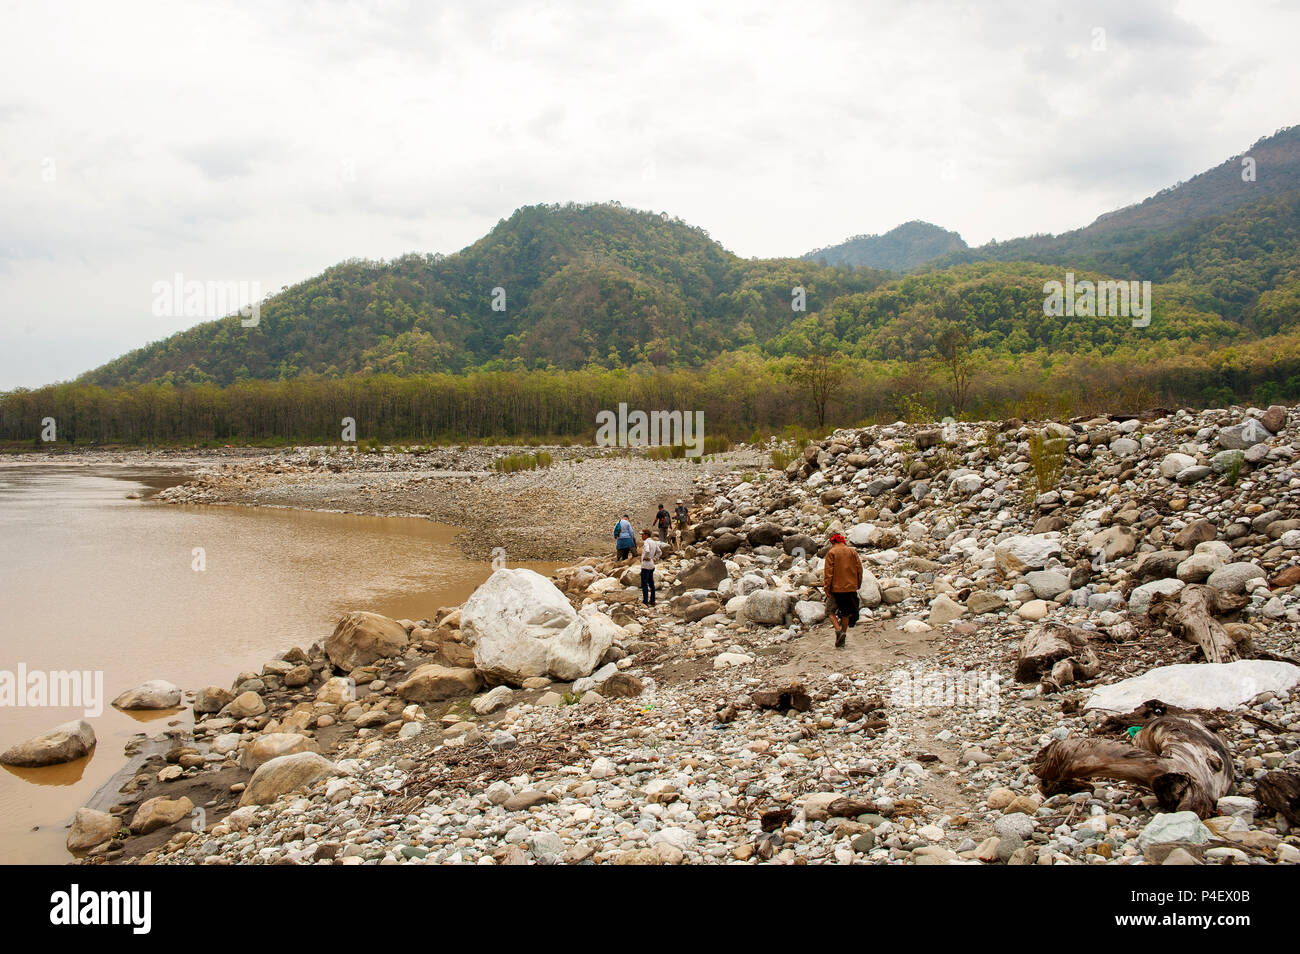 Zusammenfluss von Sarda und Ladhya Flüsse in der Nähe von Chuka und Sem Dörfer, Ort, berühmt durch Jim Corbett in seinem Buch Menschenfresser von Kumaon, Indien Stockfoto